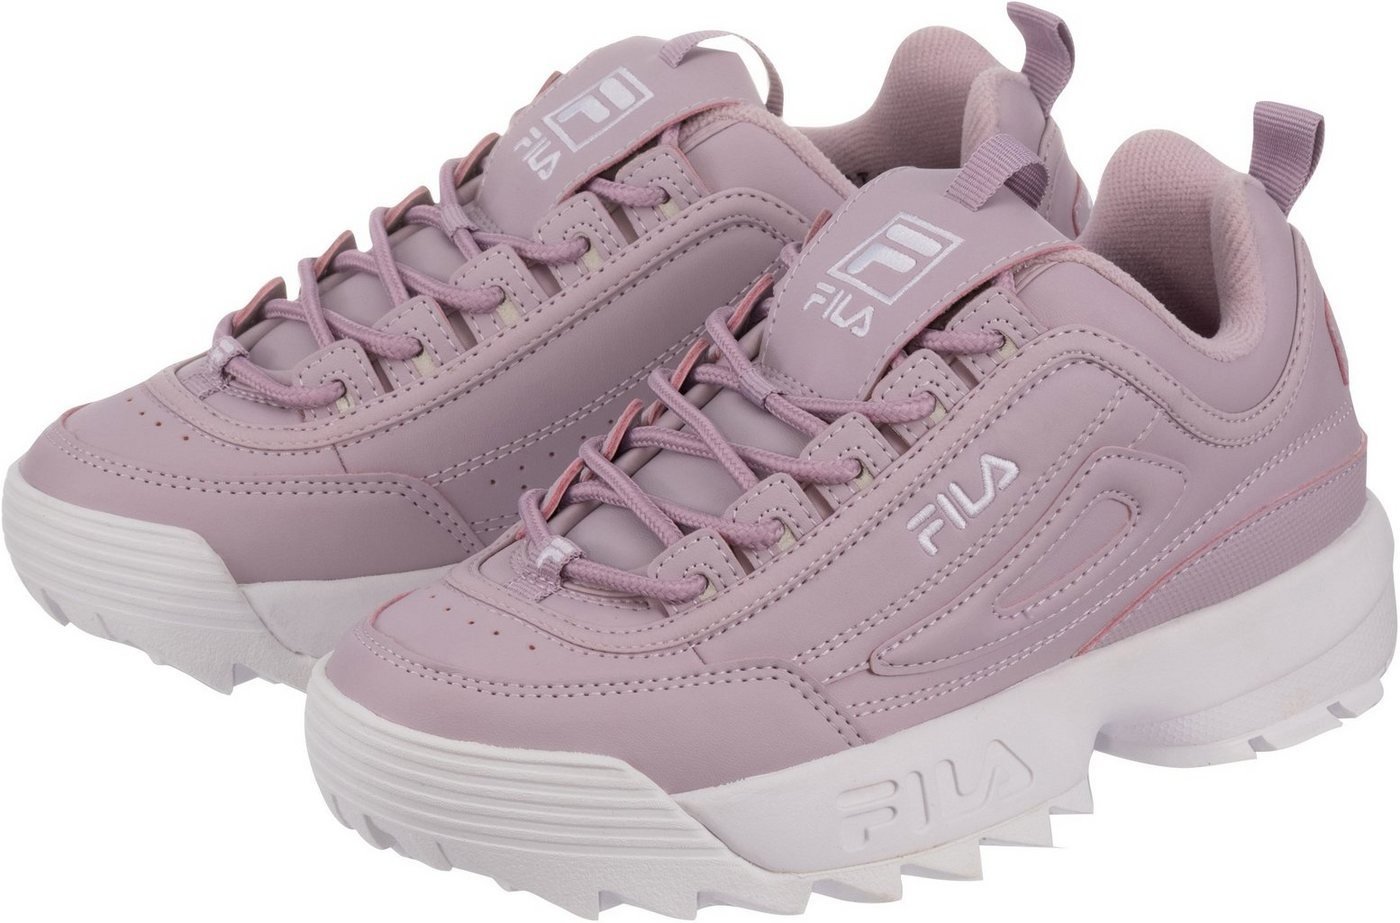 Fila Disruptor low Sneaker rosa 39